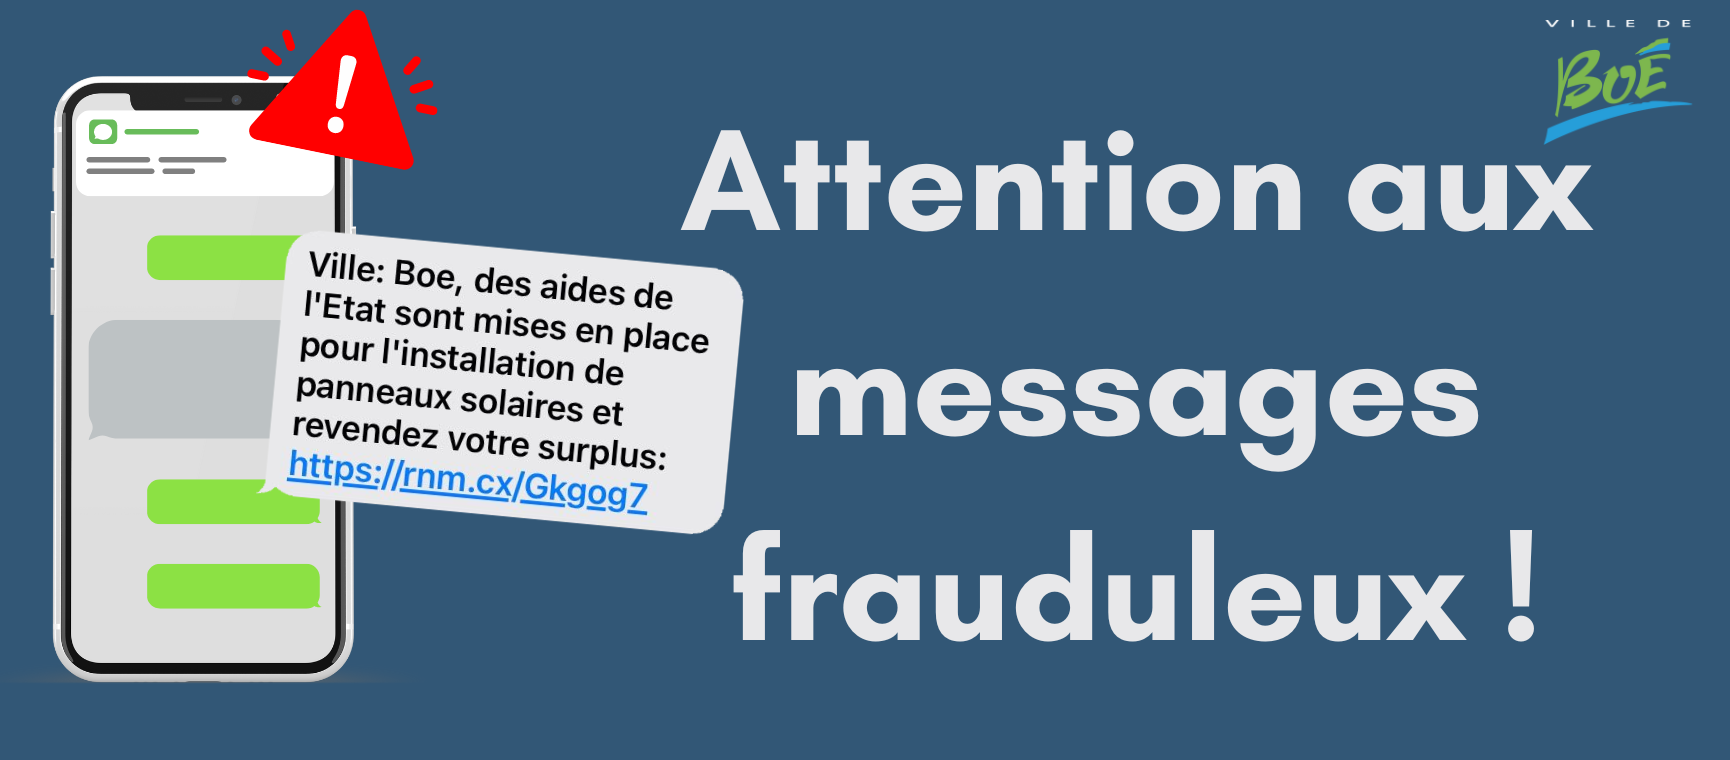 Dernières actualités - Attention aux messages frauduleux !